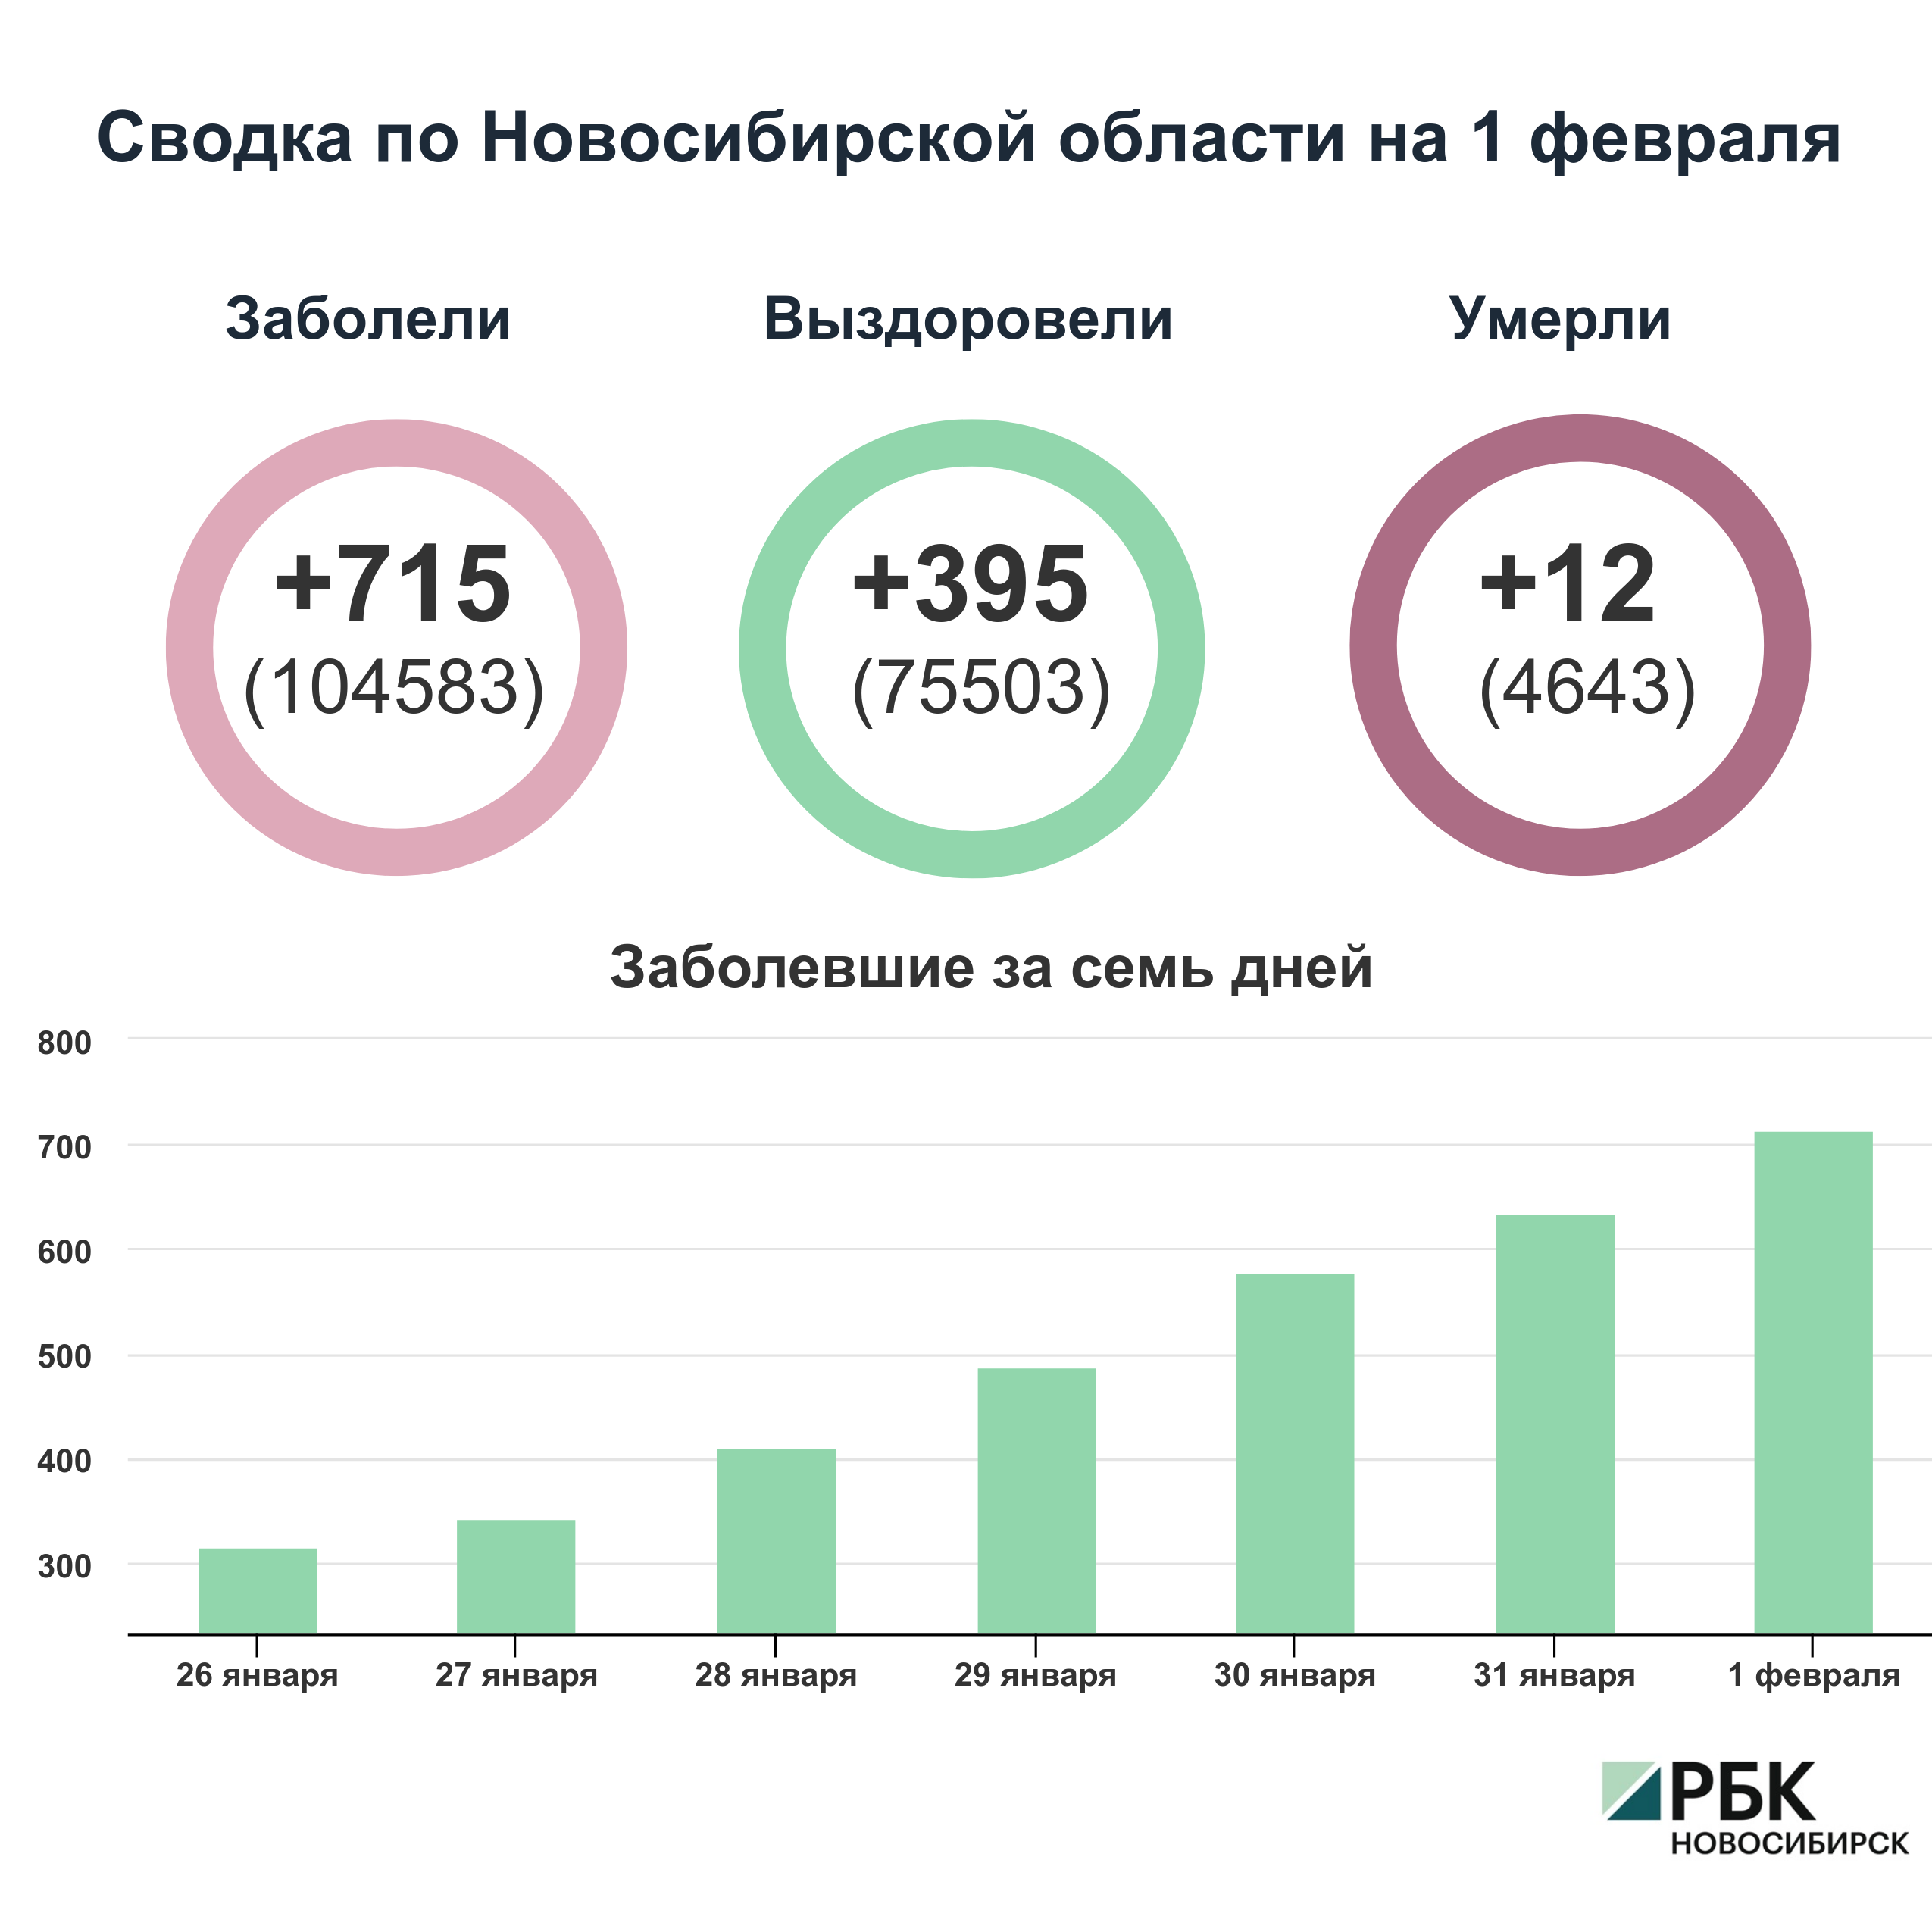 Коронавирус в Новосибирске: сводка на 1 февраля